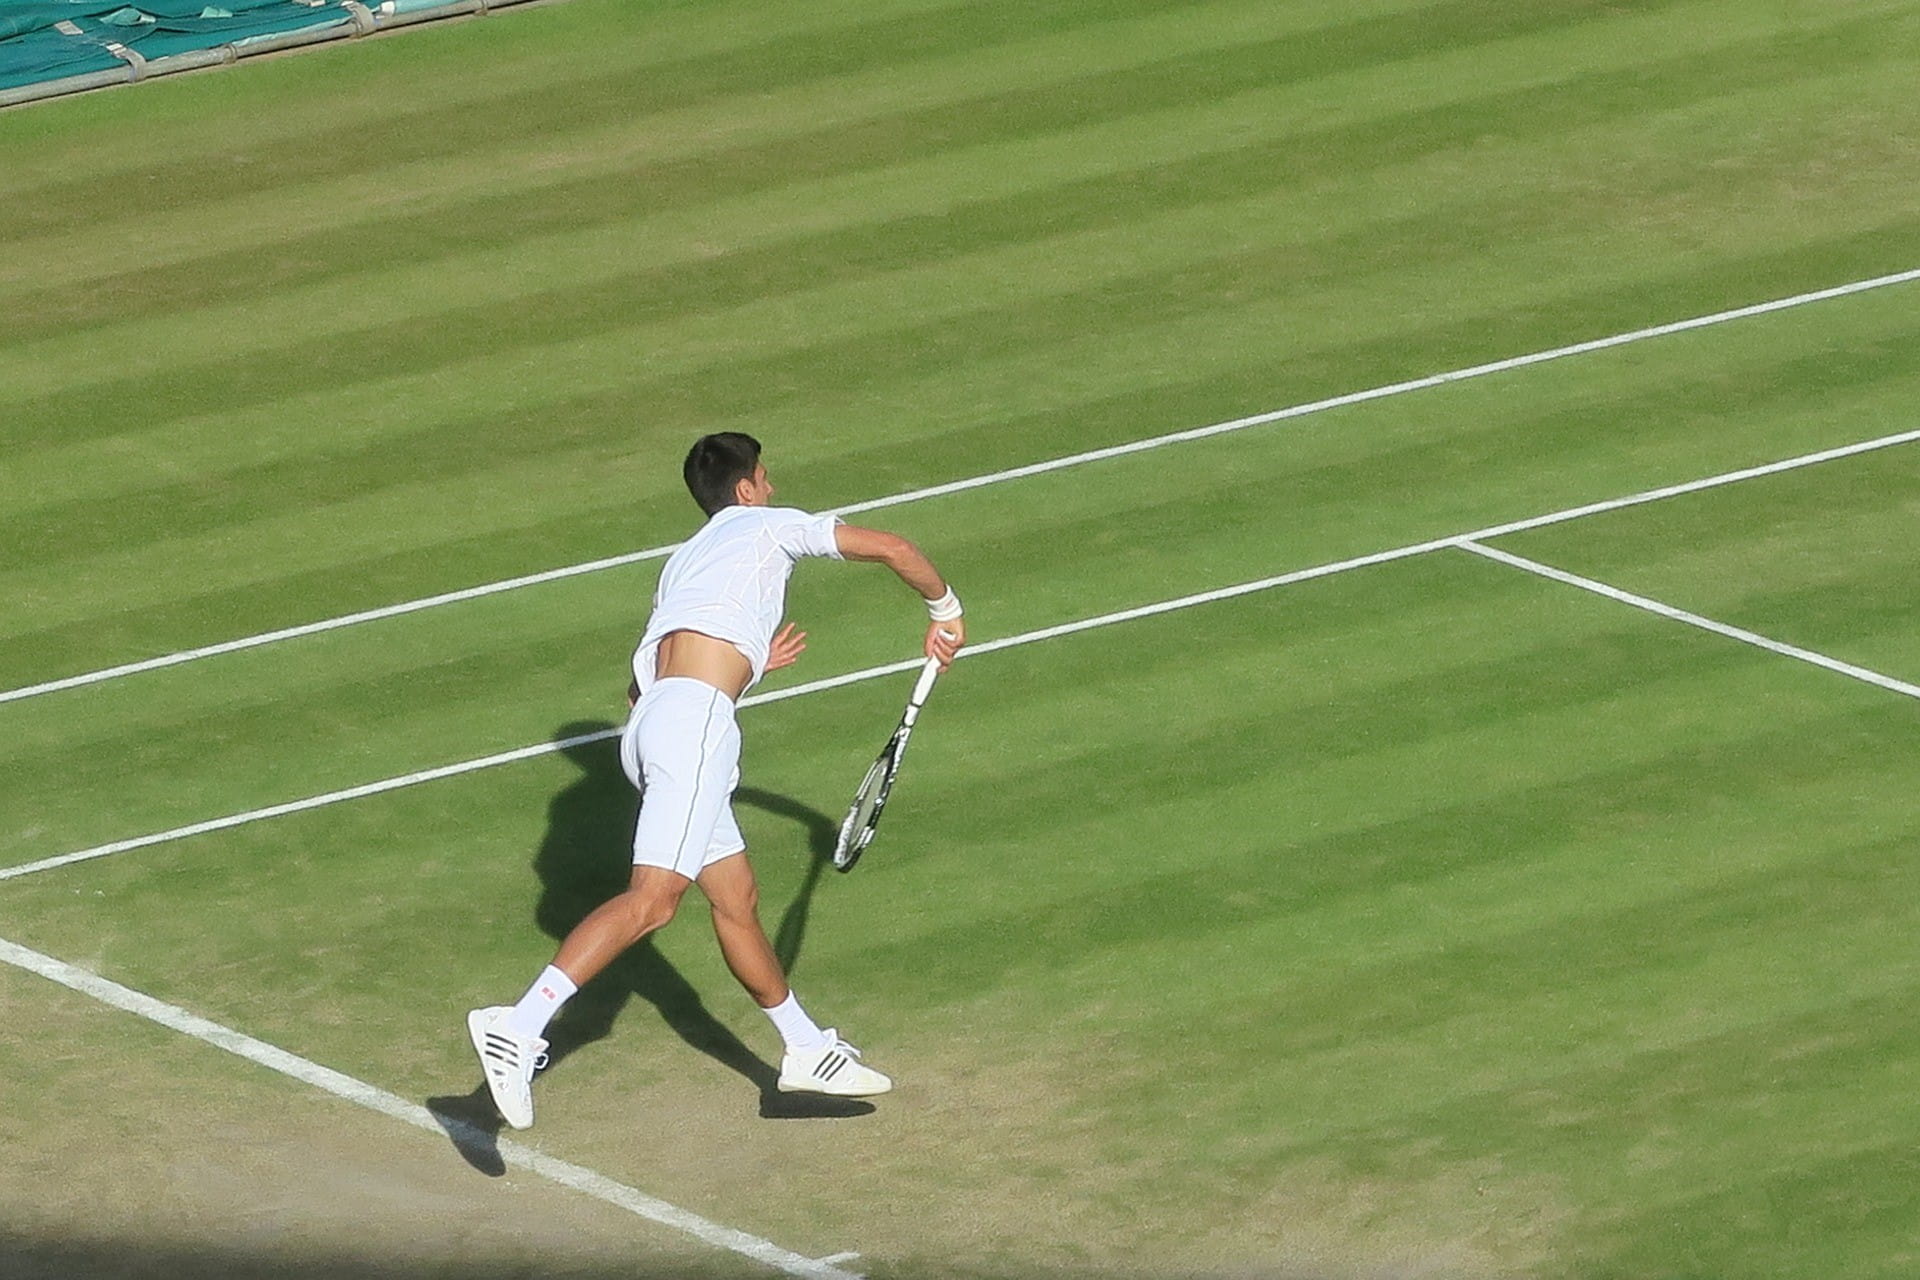 Ein männlicher Tennisspieler bewegt sich auf den Ball zu, der im Bild noch nicht sichtbar ist.